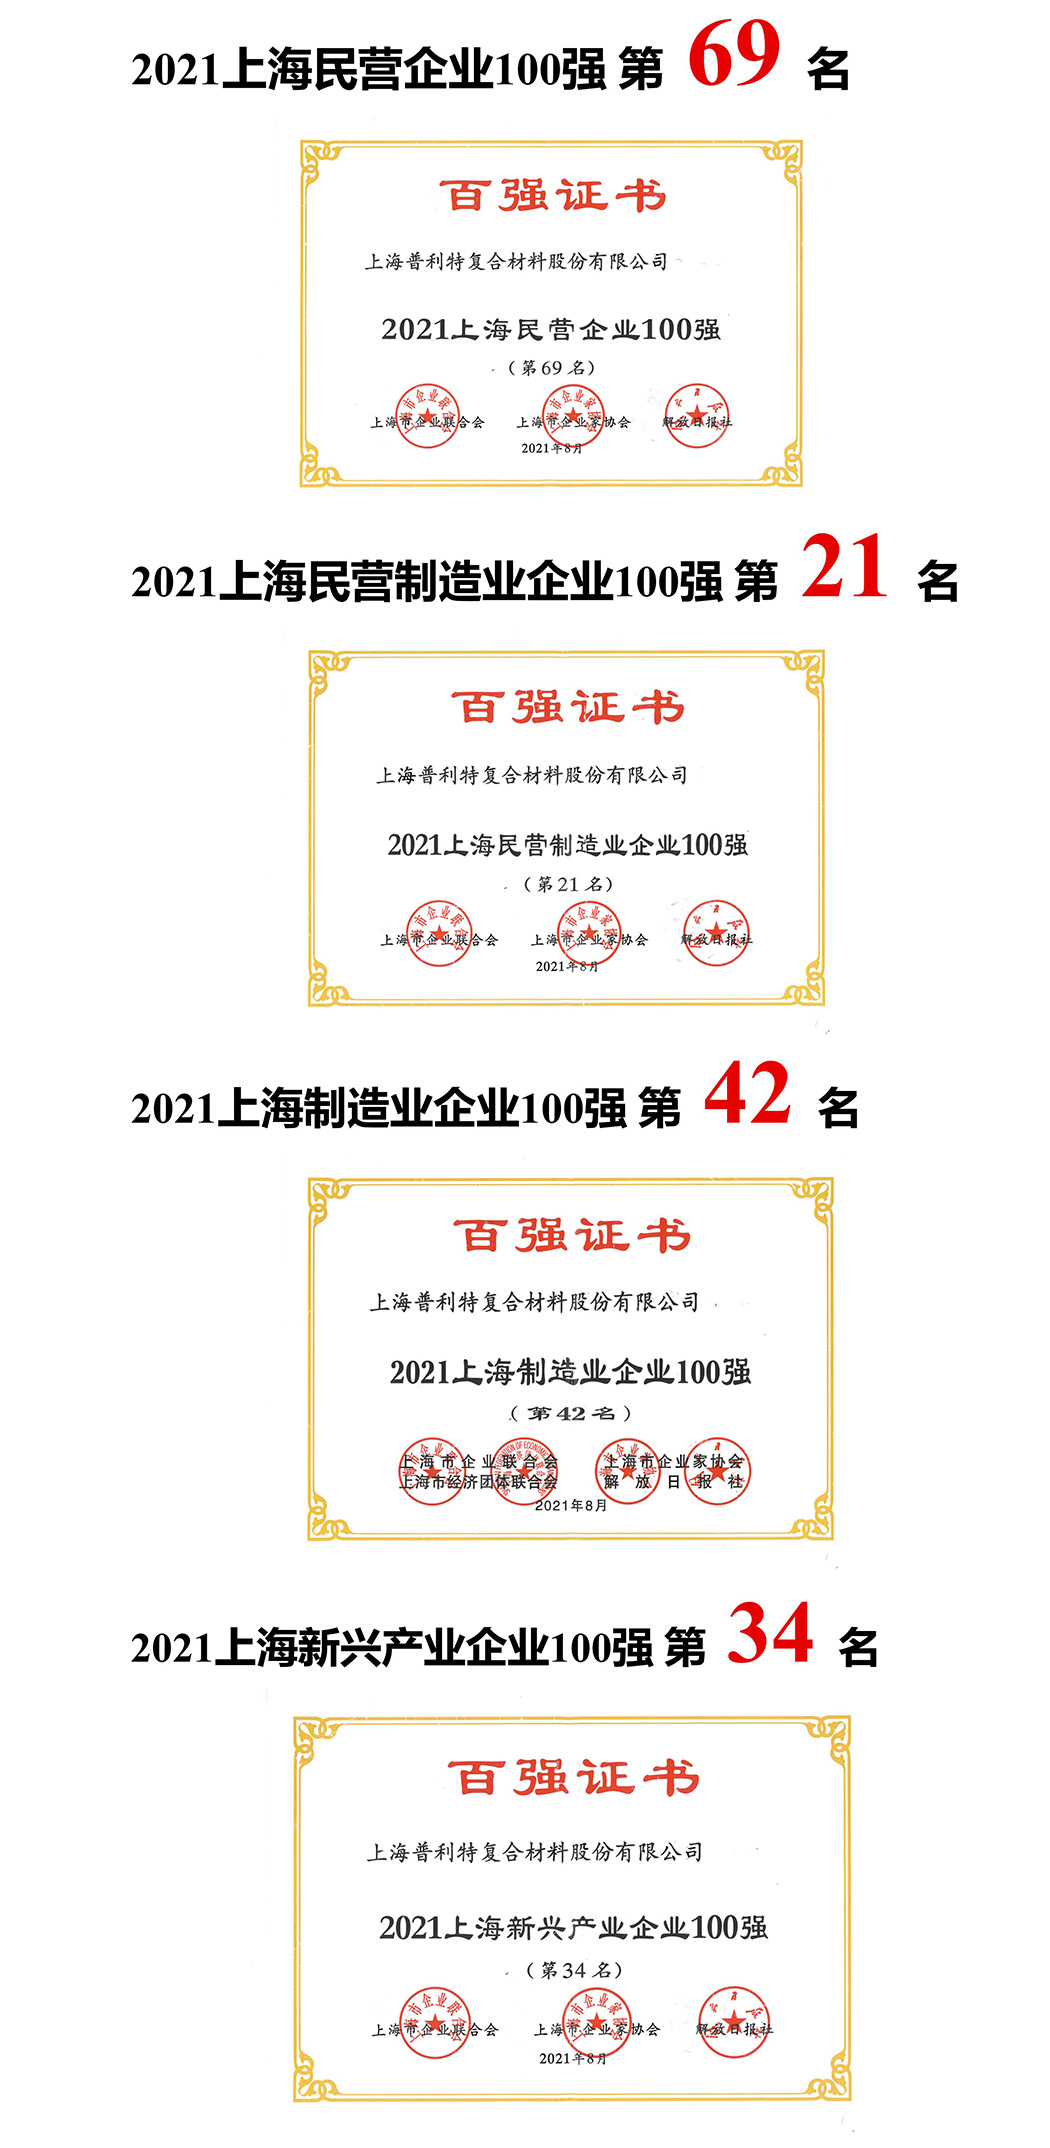 bet356t体育亚洲网页版荣登2021上海企业百强多项榜单！